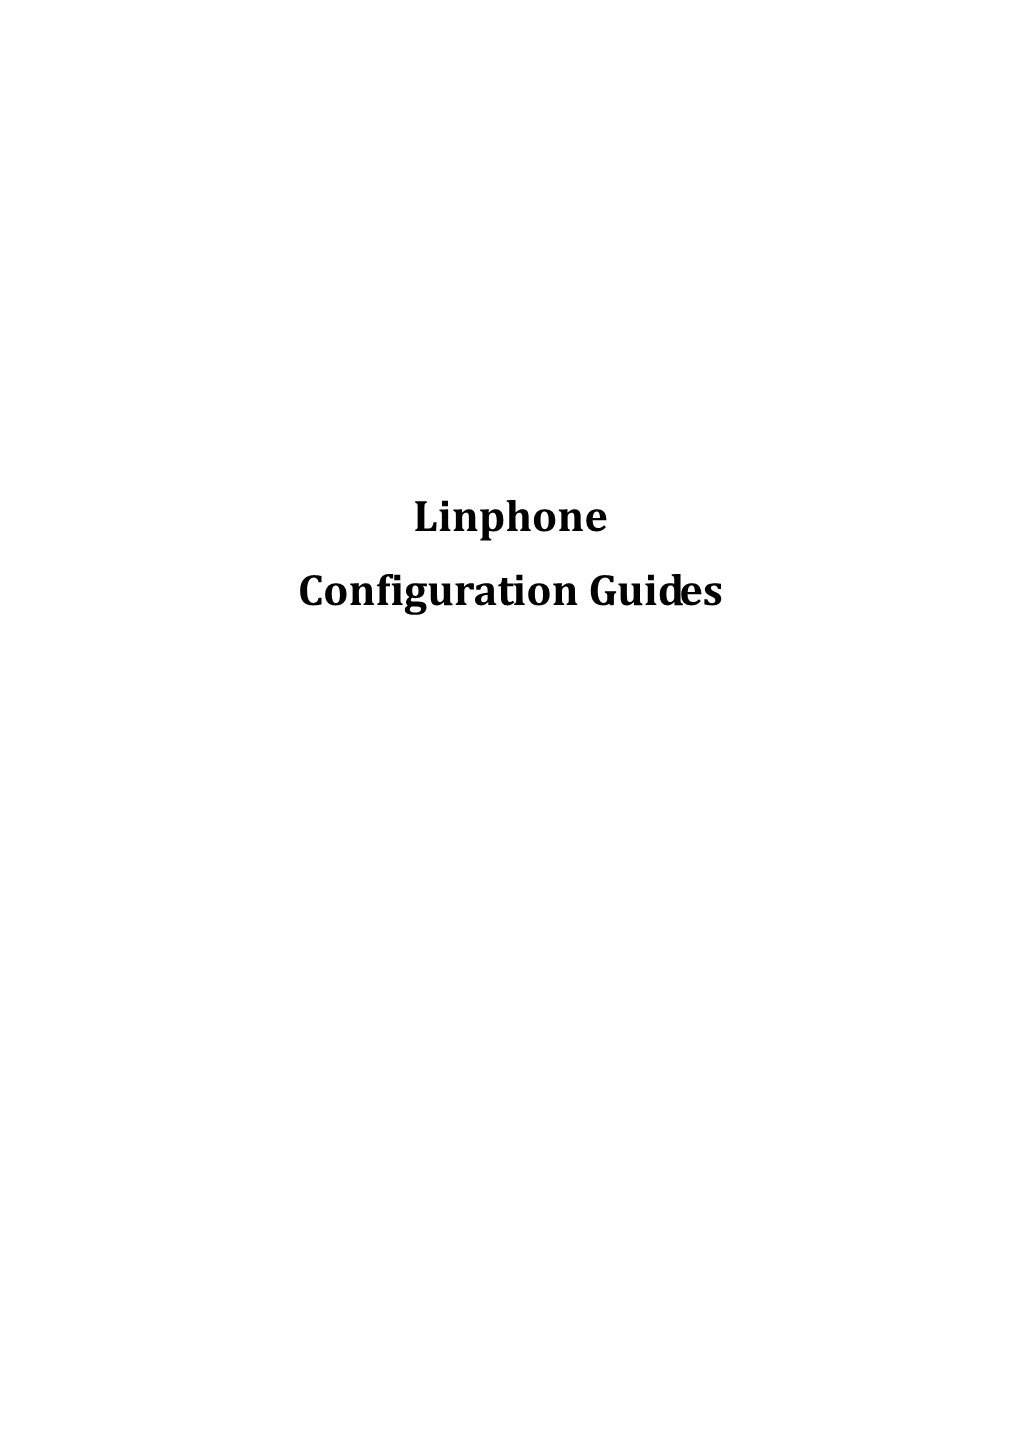 3CX Phone Configuration Guides